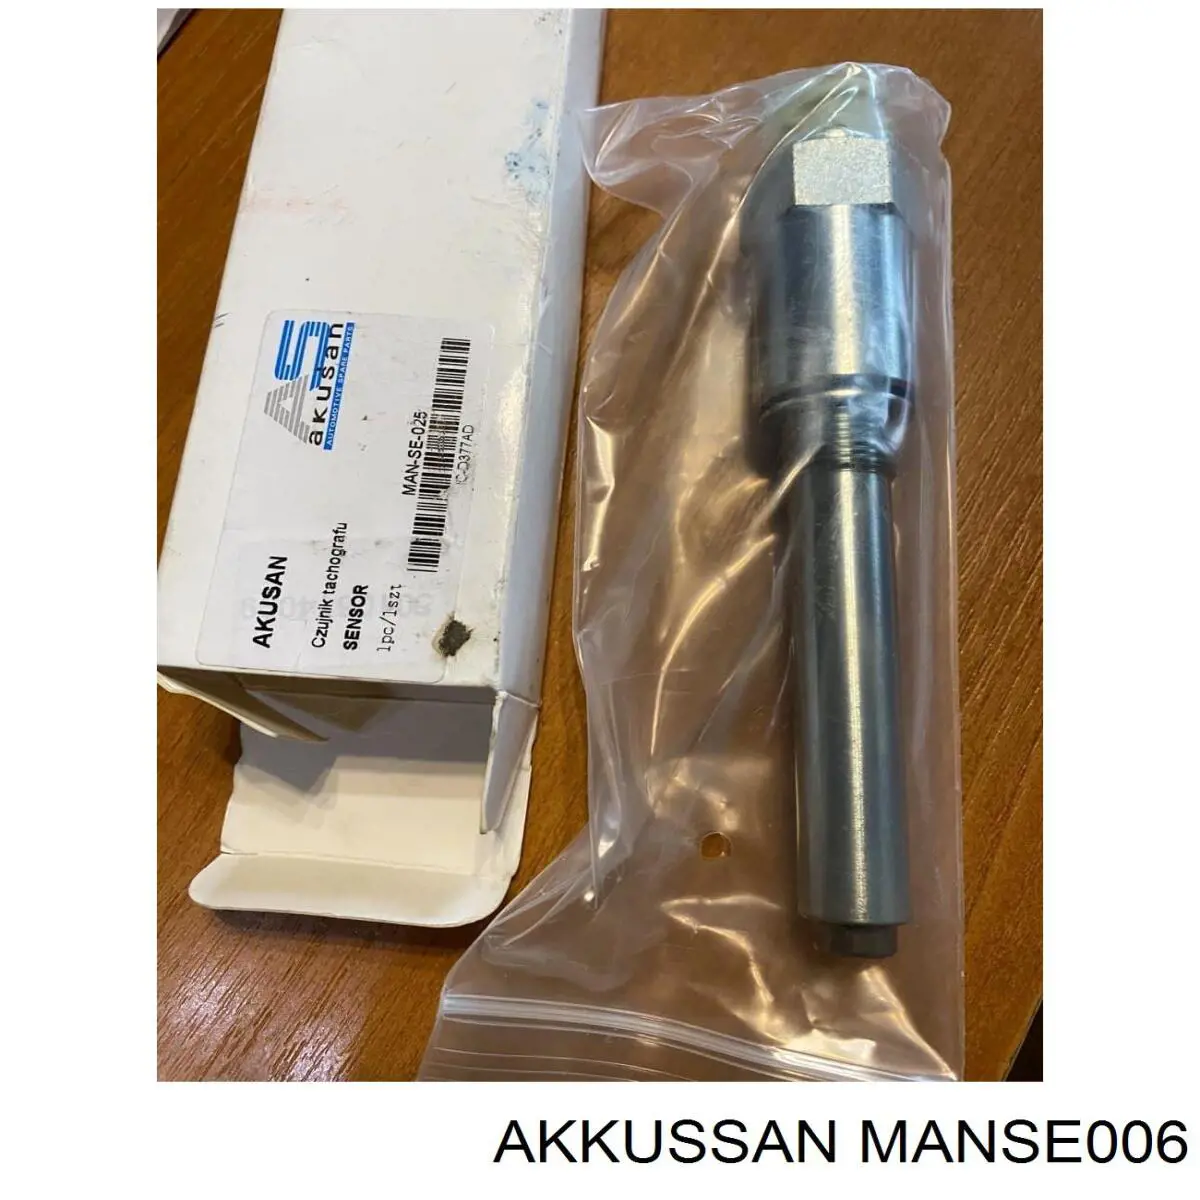 MANSE006 Akkussan датчик індикатора лампи роздатки блокавання диференціалу